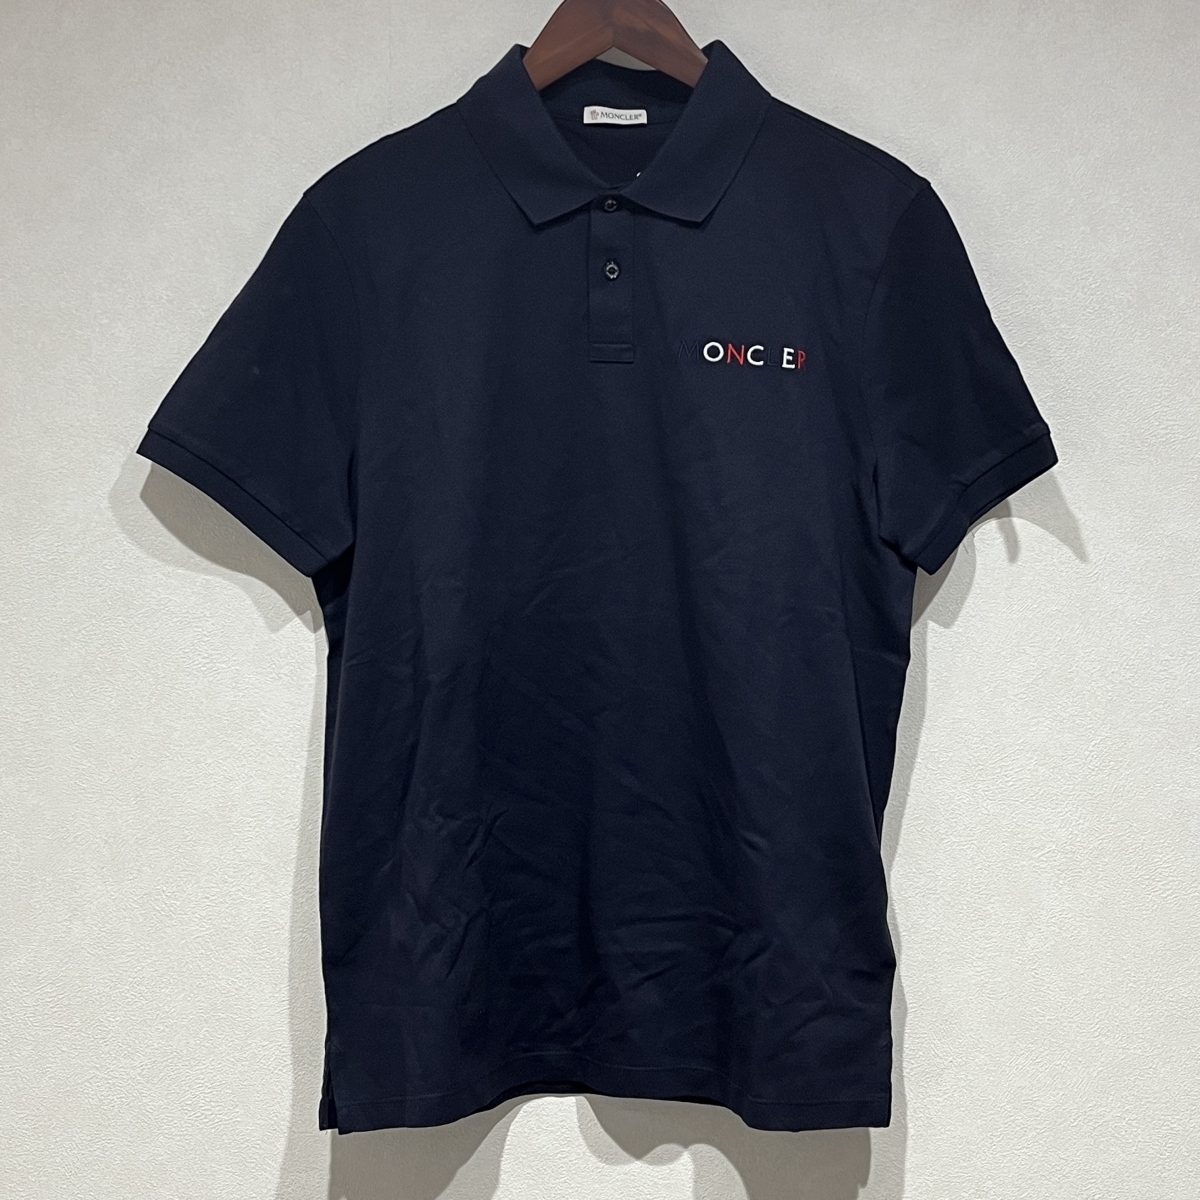 モンクレールの21年 ネイビー SS-POLO コットン ポロシャツの買取実績です。